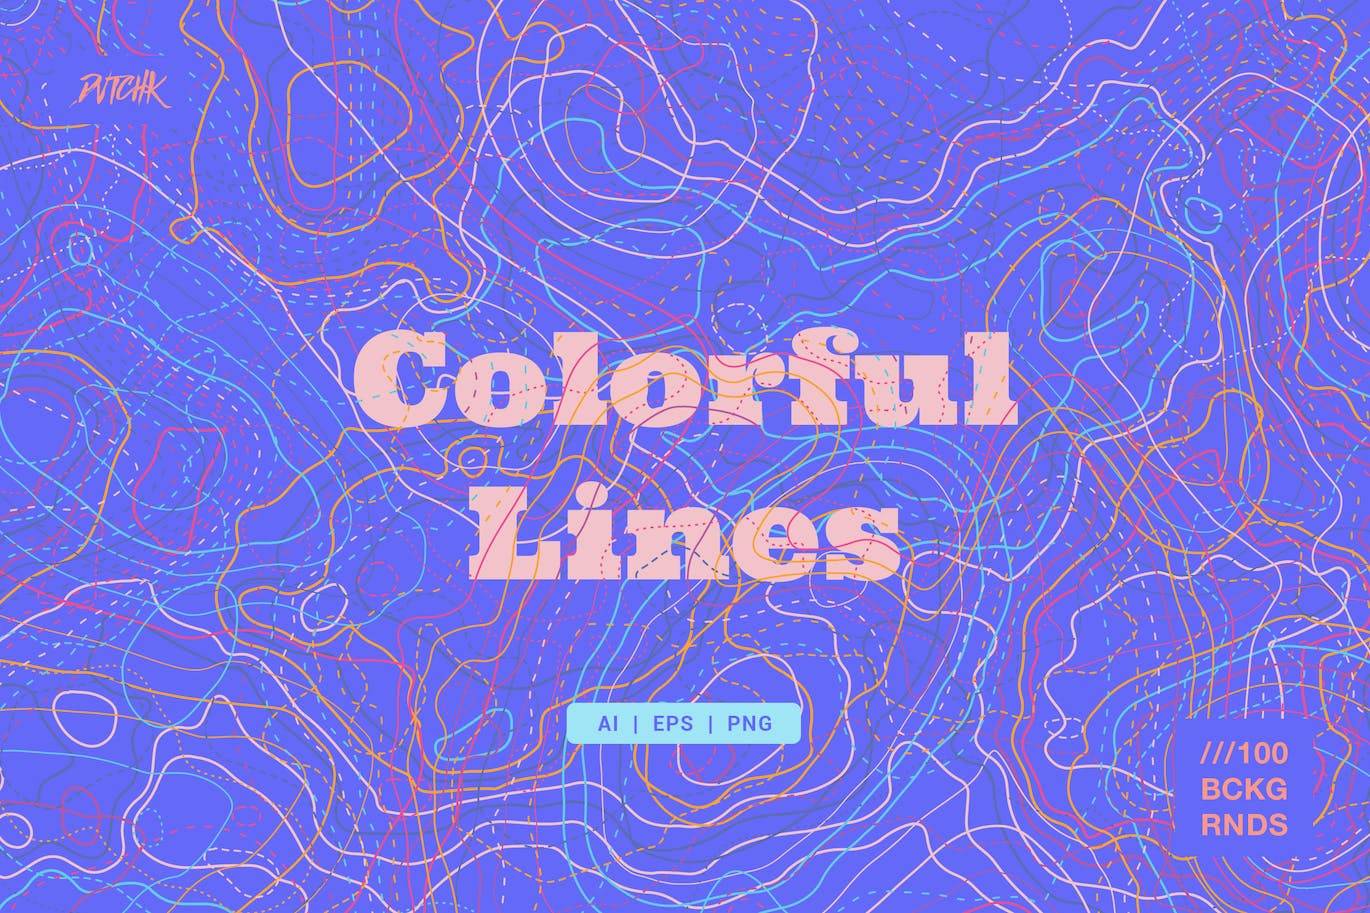 5314 混乱抽象地形线条的可编辑矢量背景图素材 -Colorful Lines@GOOODME.COM